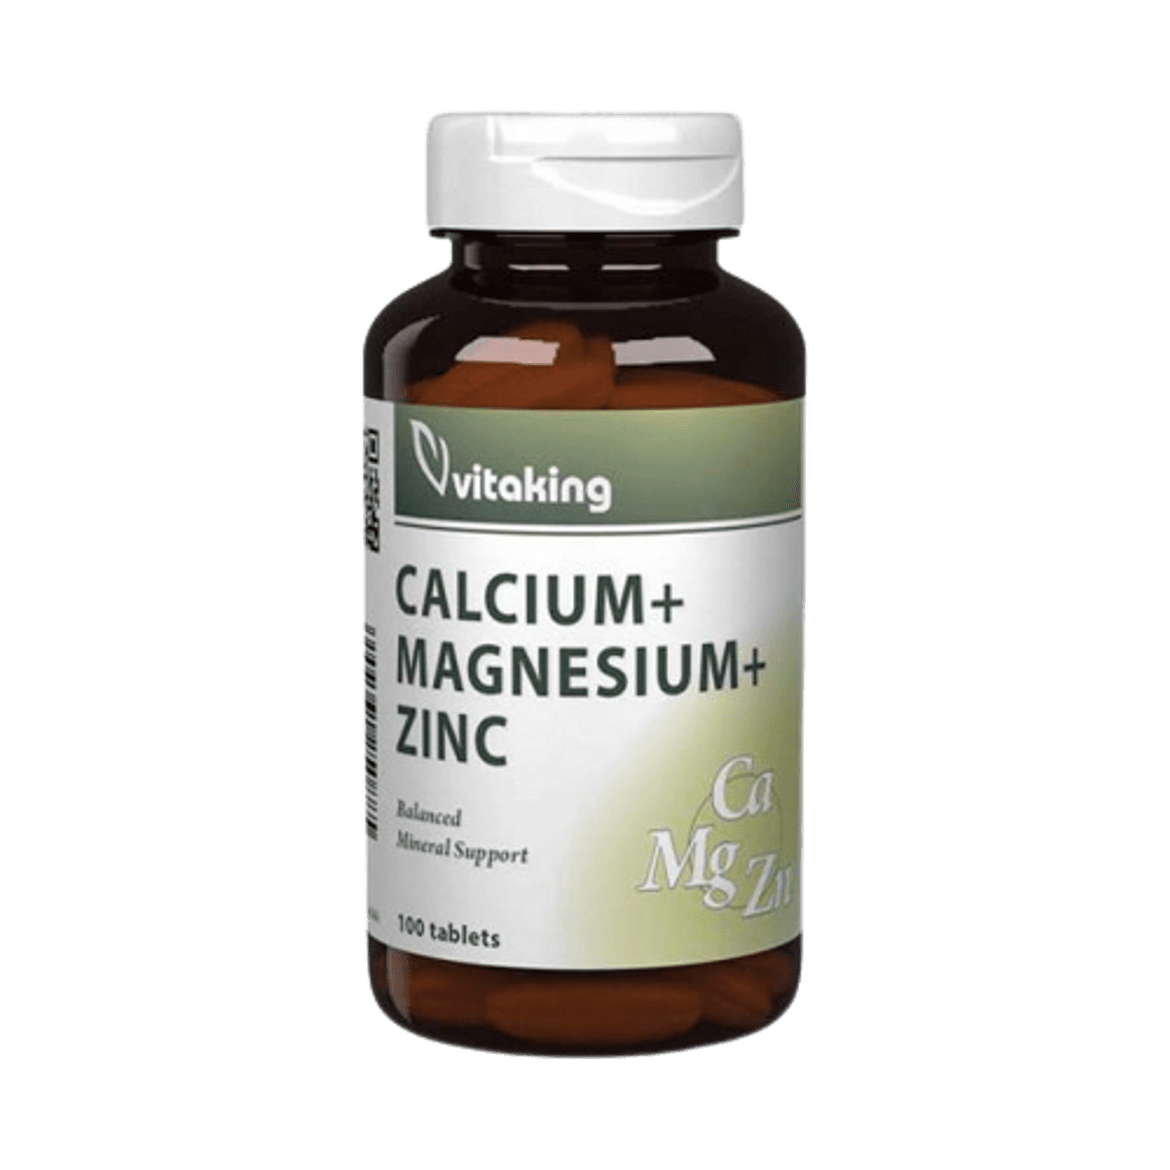 Vitaking Calcium + Magnesium + Zinc tabletta